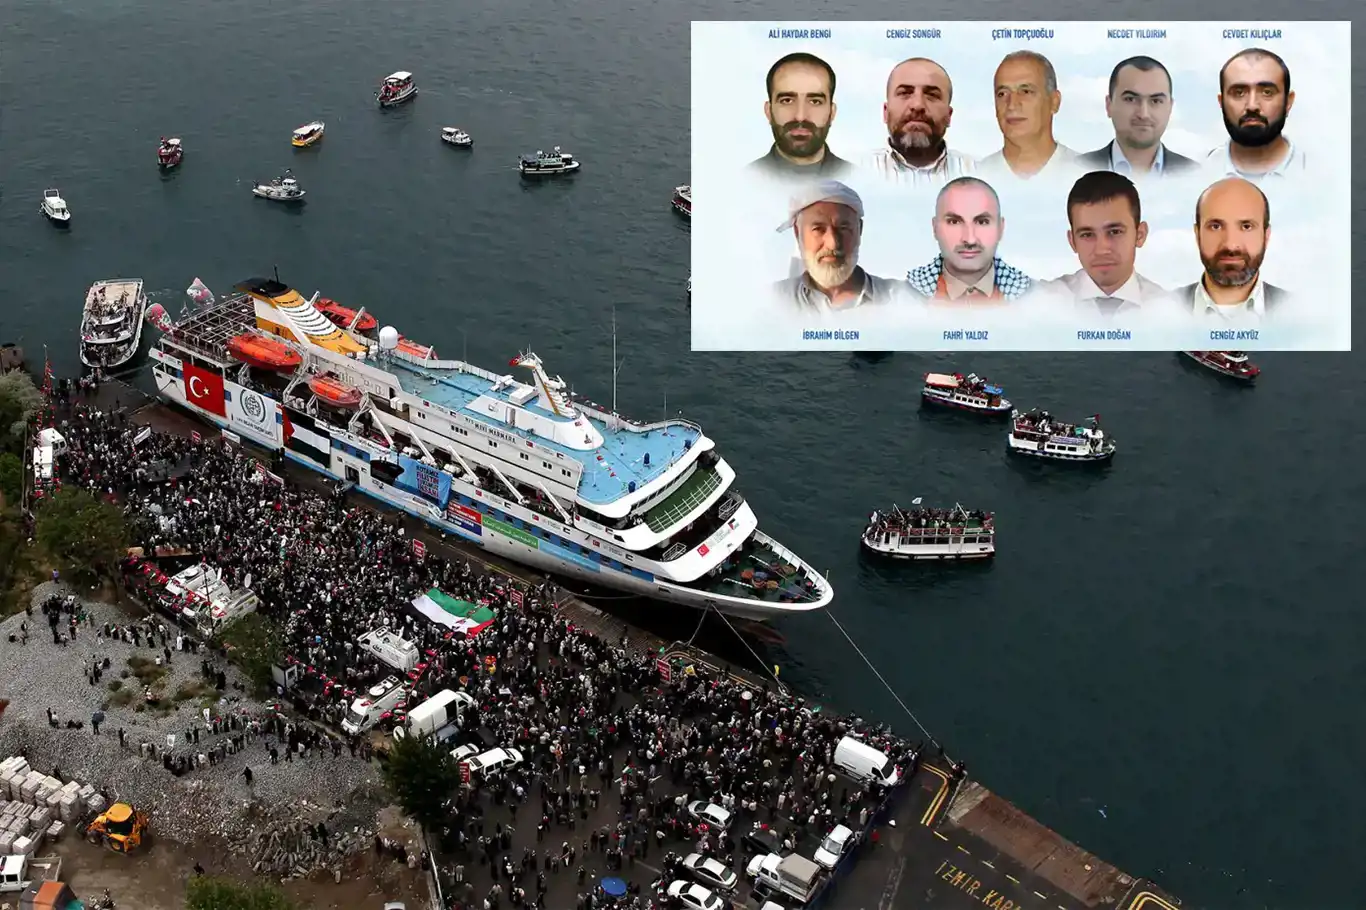 Decimotercer aniversario de la masacre de Mavi Marmara: Recordando la tragedia y abogando por la justicia